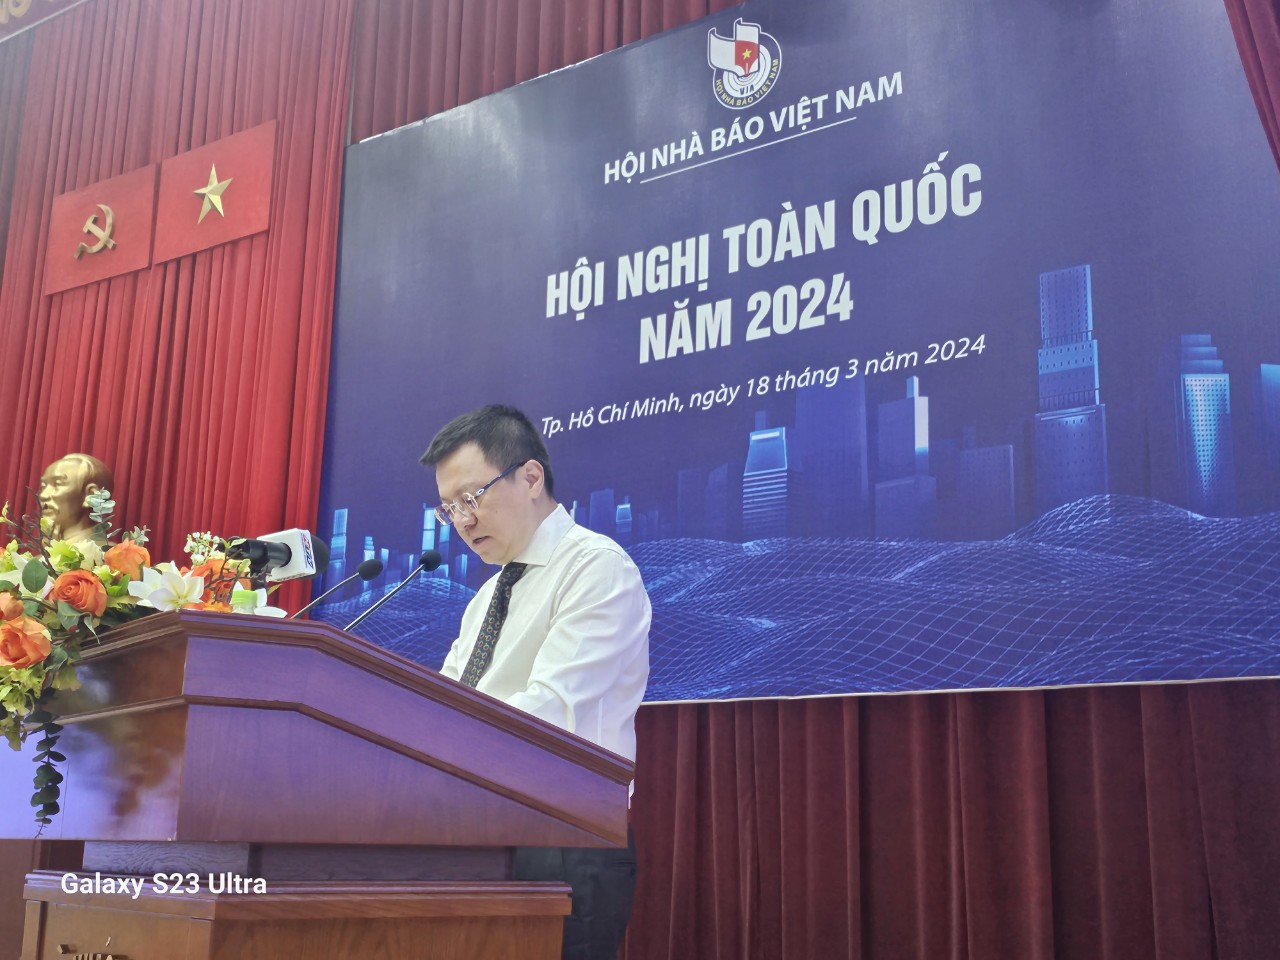 Tiêu điểm - Hội Nhà báo Việt Nam tổ chức Hội nghị toàn quốc năm 2024 (Hình 2).